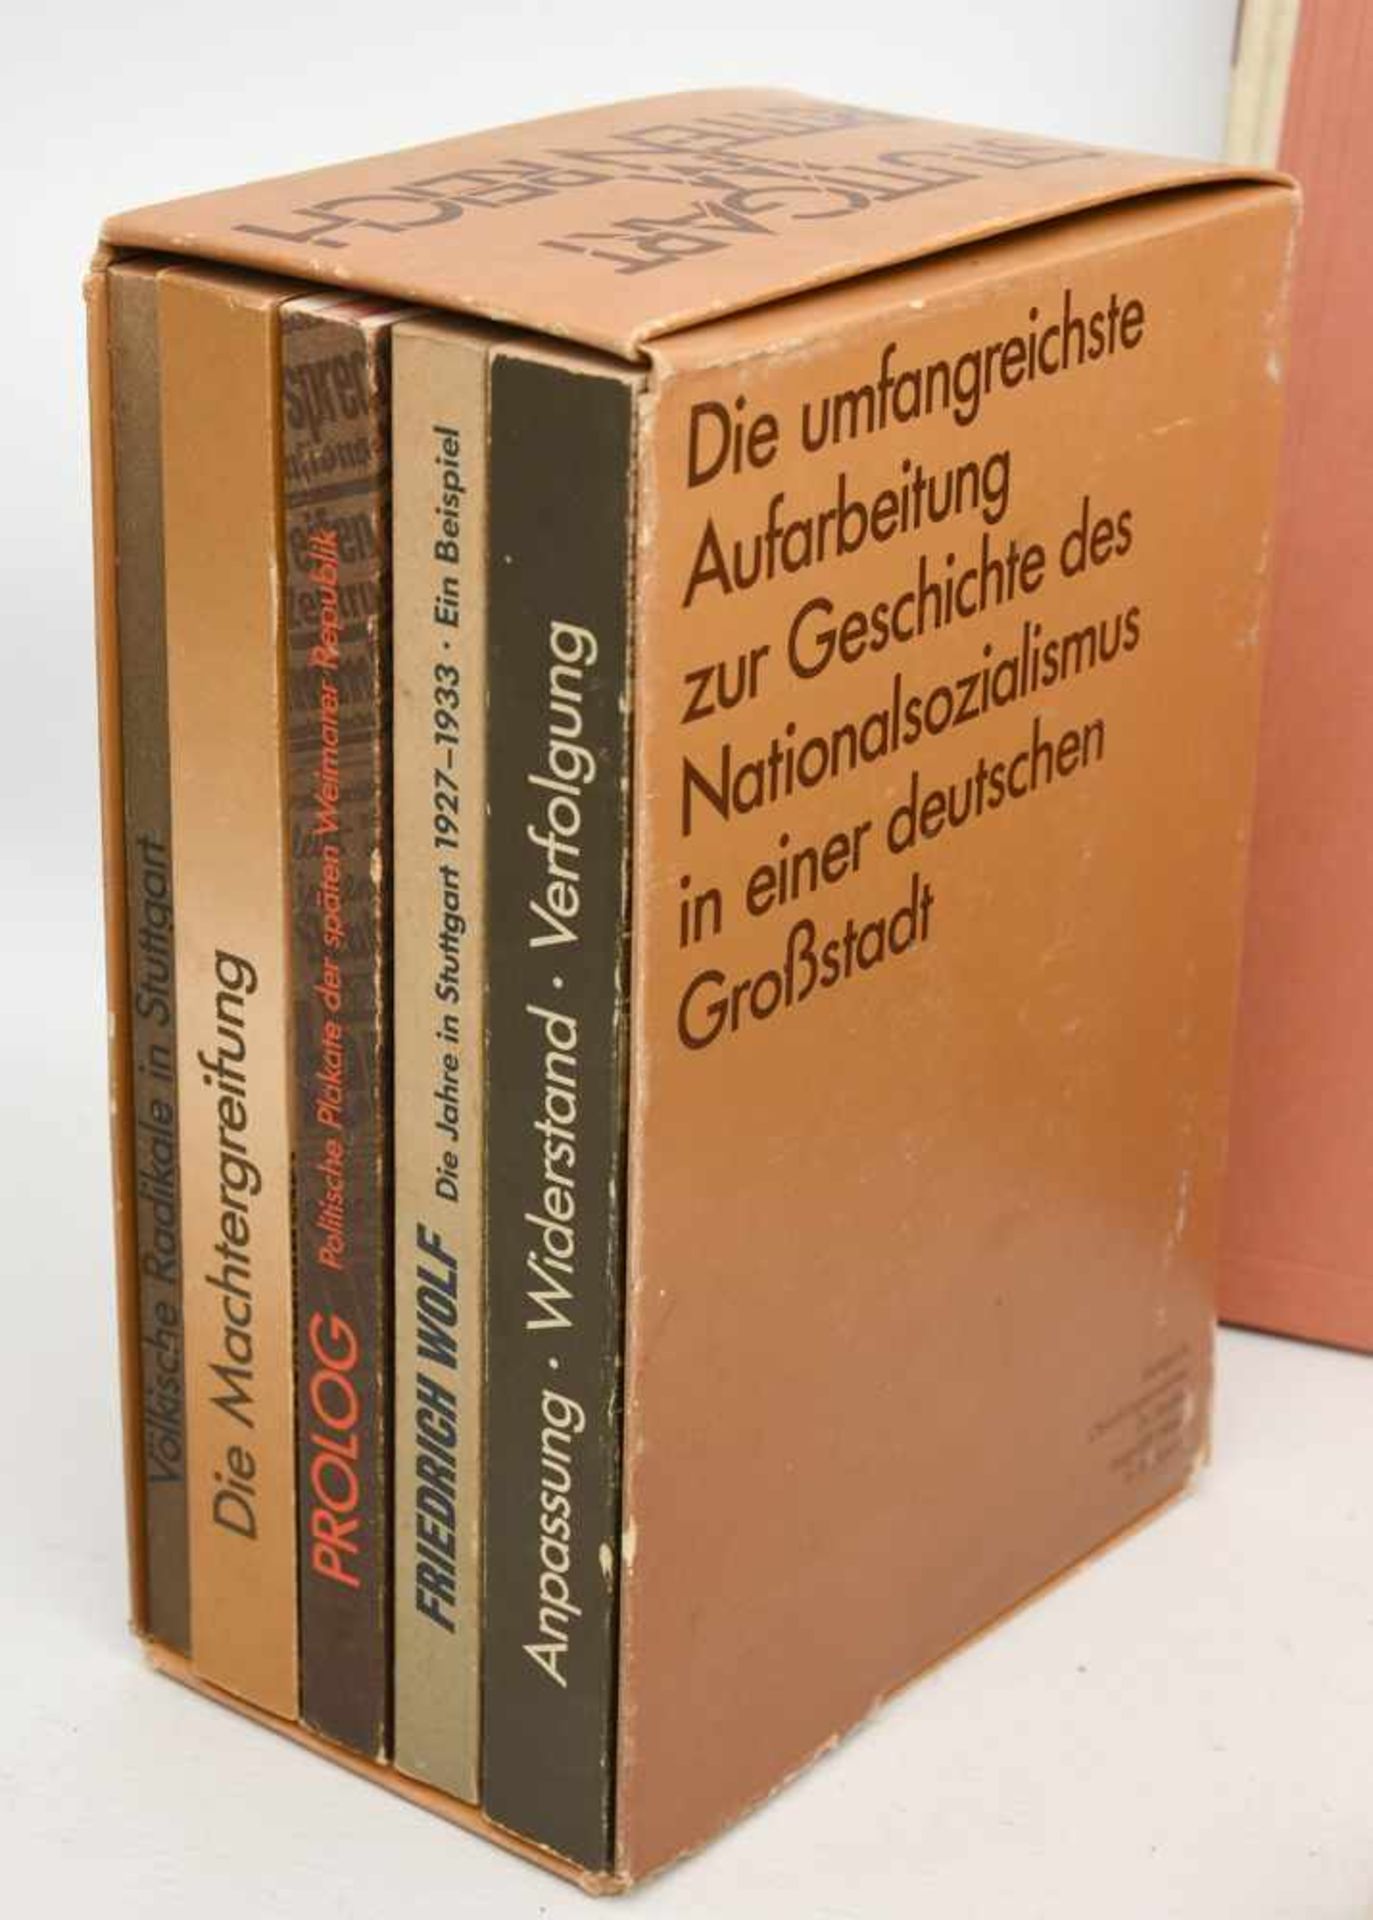 BÜCHER-KONVOLUT "STUTTGART", diverse Sachbücher/Monografien, Deutsches Reich/BRD 1889- 1984 Konvolut - Image 6 of 10